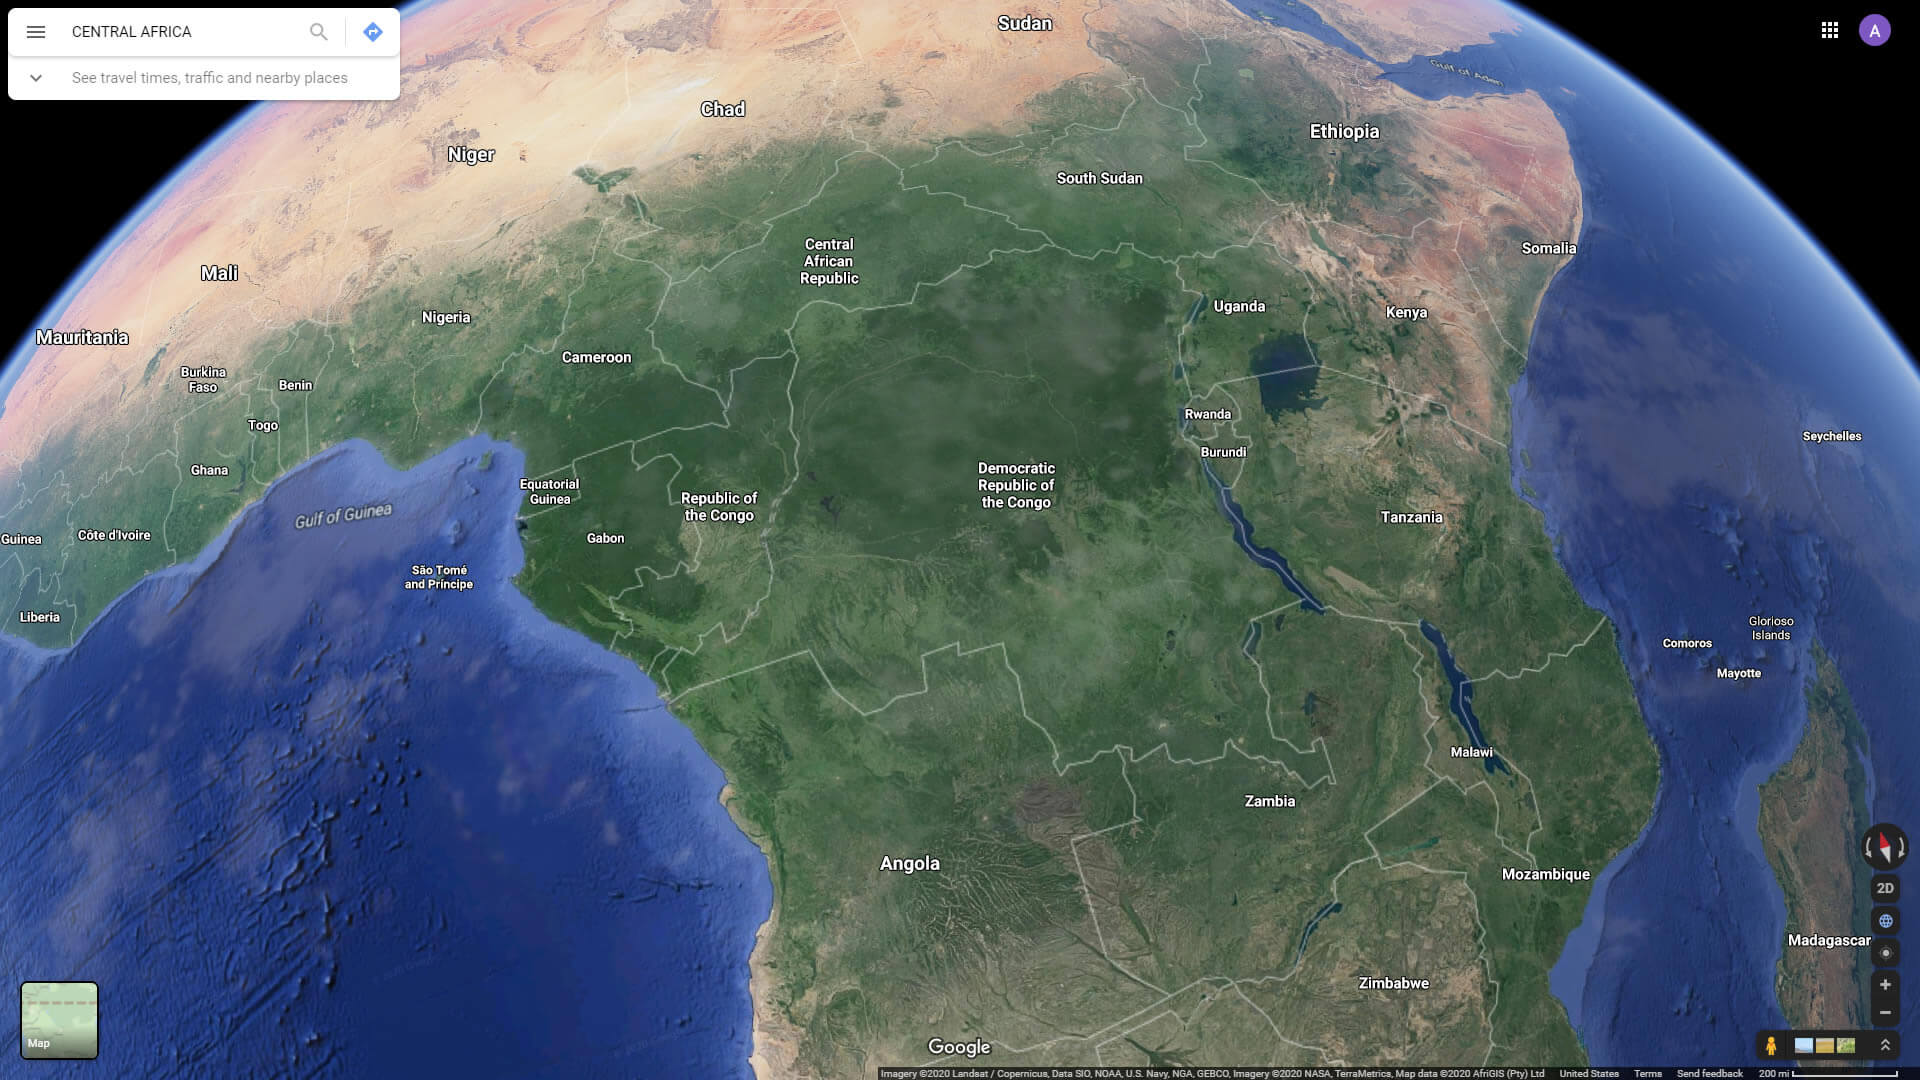 Vue satellite de l'Afrique centrale avec les pays